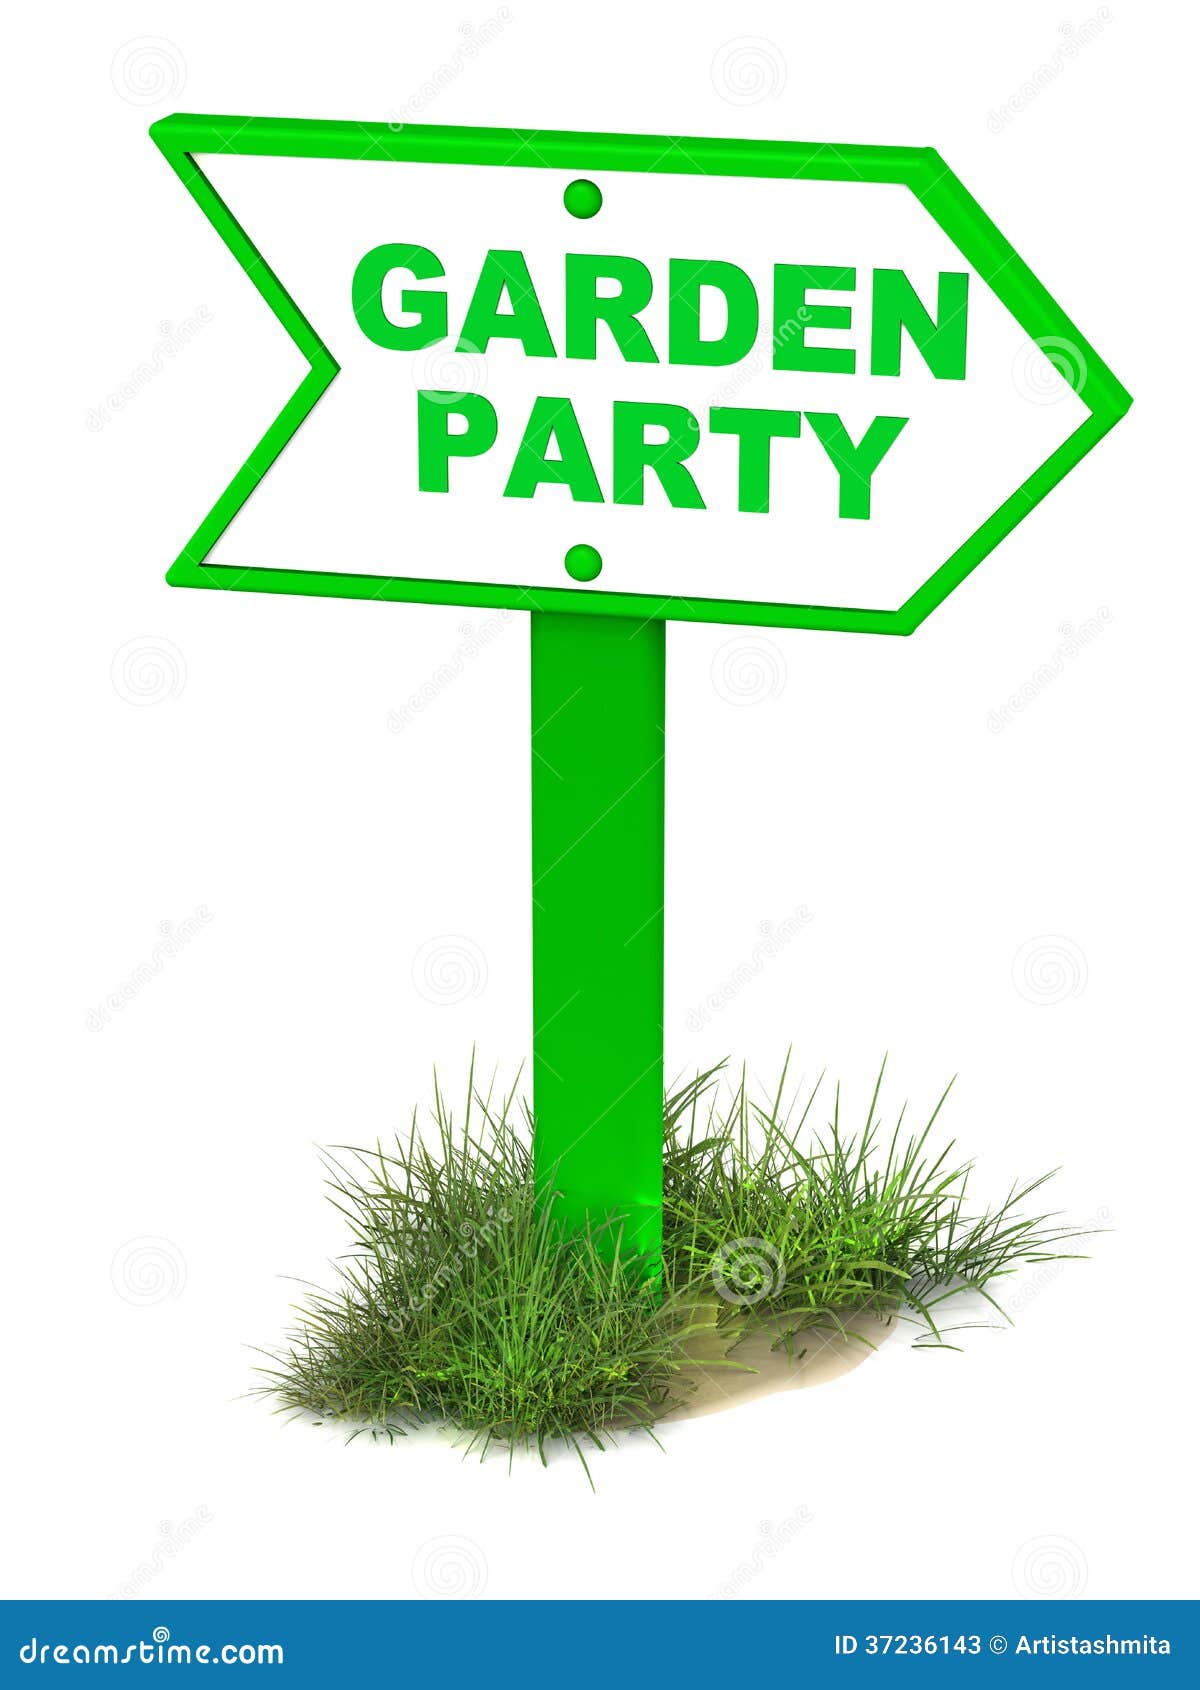 clipart garden party - photo #18